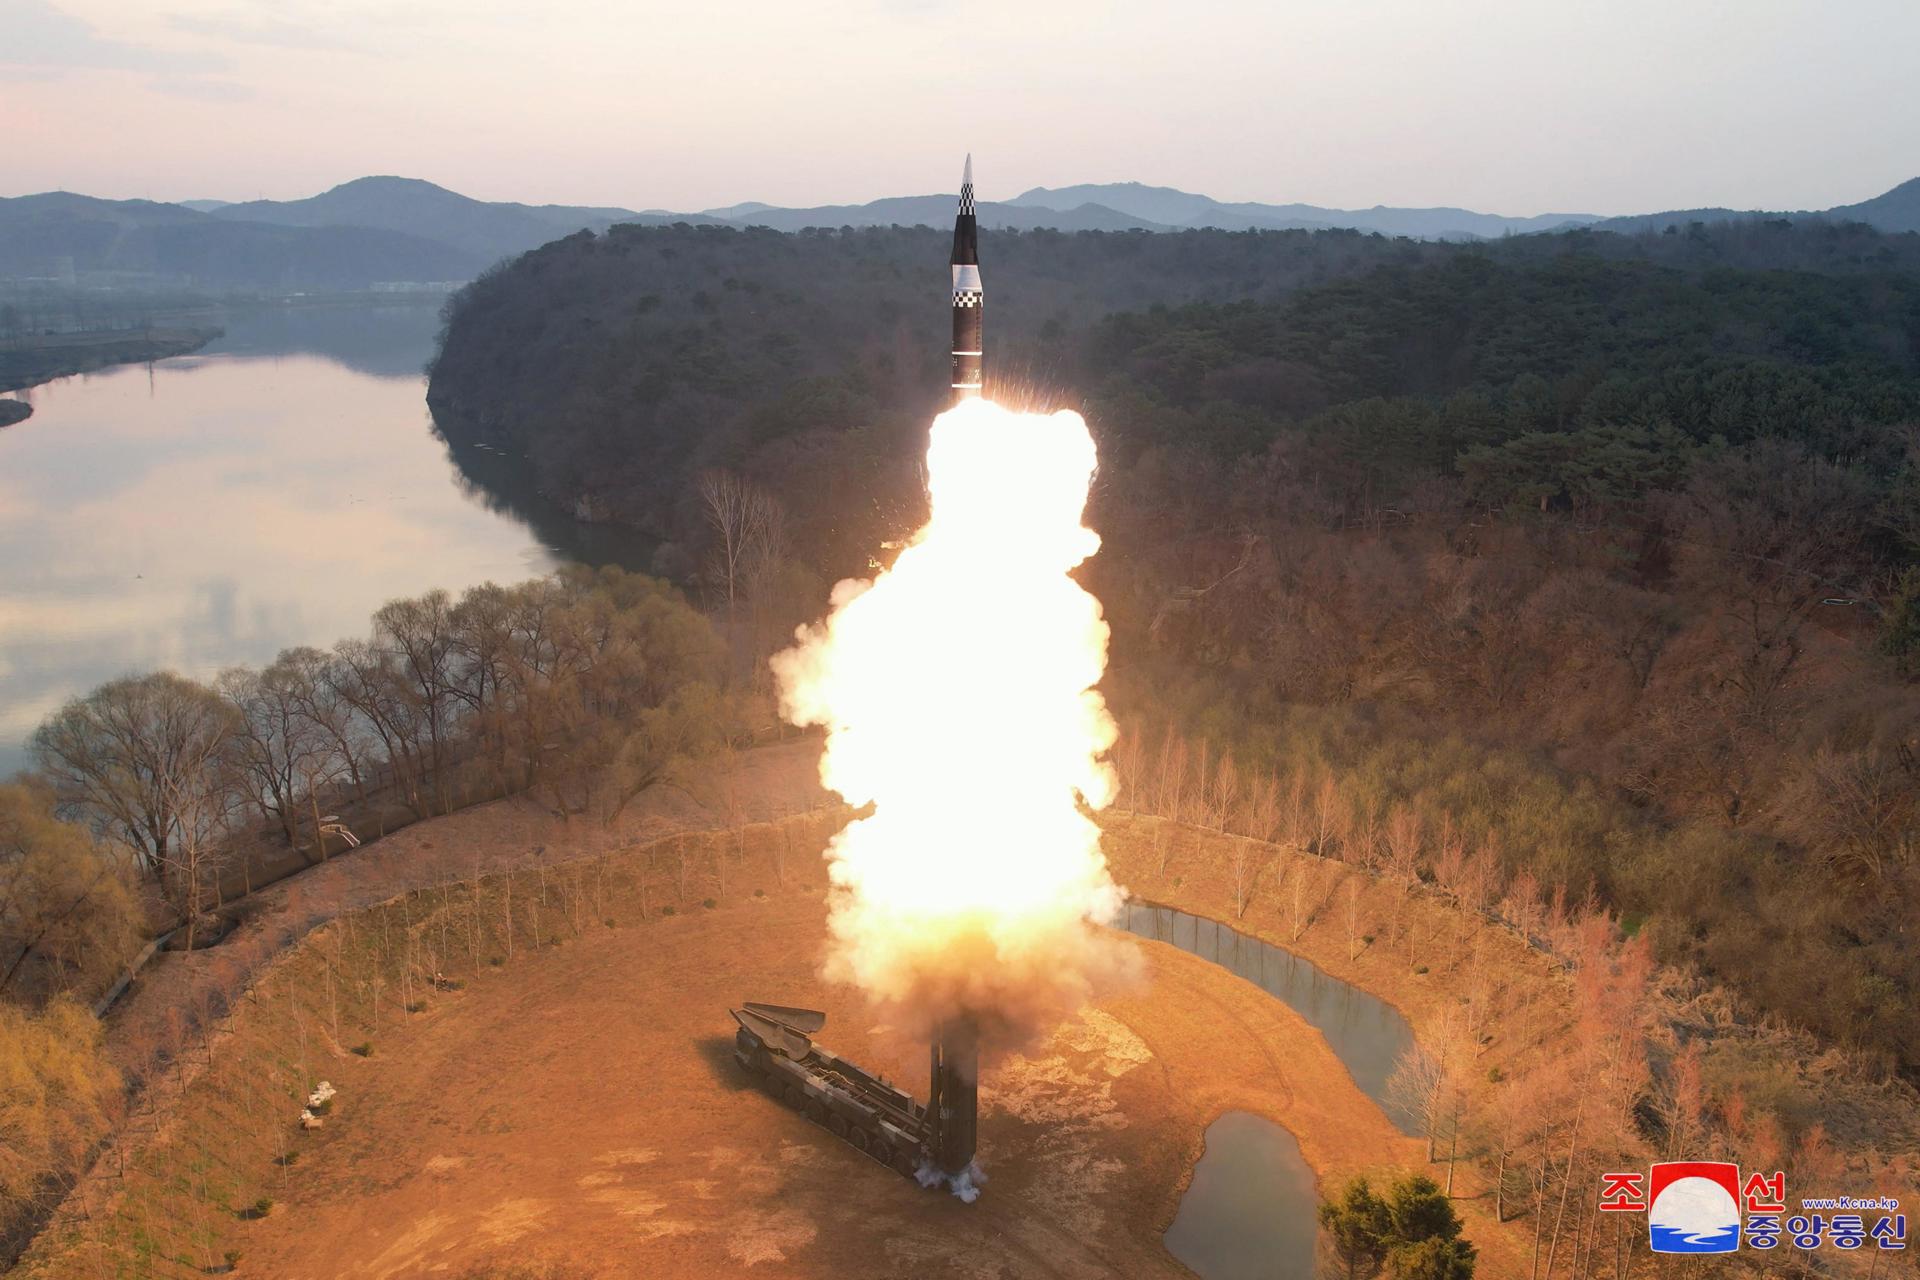 Fotografía cedida que muestra la prueba del misil Hwasongpho-16B. EFE/KCNA